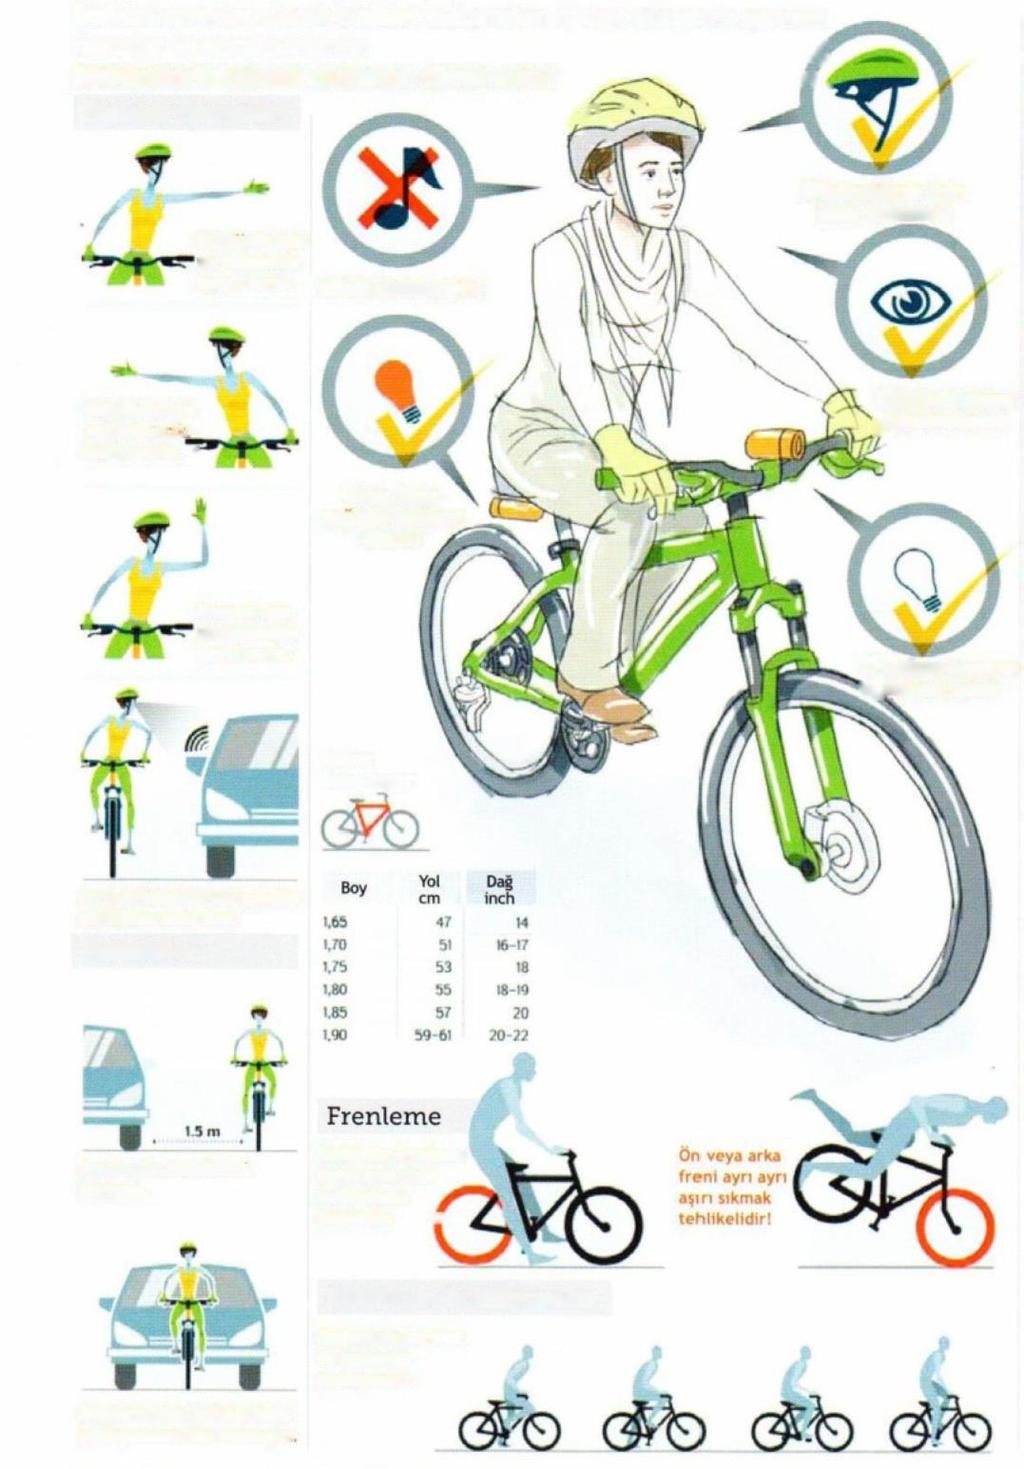 Şehirde Güvenli Bisiklet Kullanma Kılavuzu Bisiklet severler olarak bisiklet kullanırken dikkat etmemiz gereken hususlar ve kurallar vardır. ğ Bisikletinizin bakımlı olmasına dikkat edin!